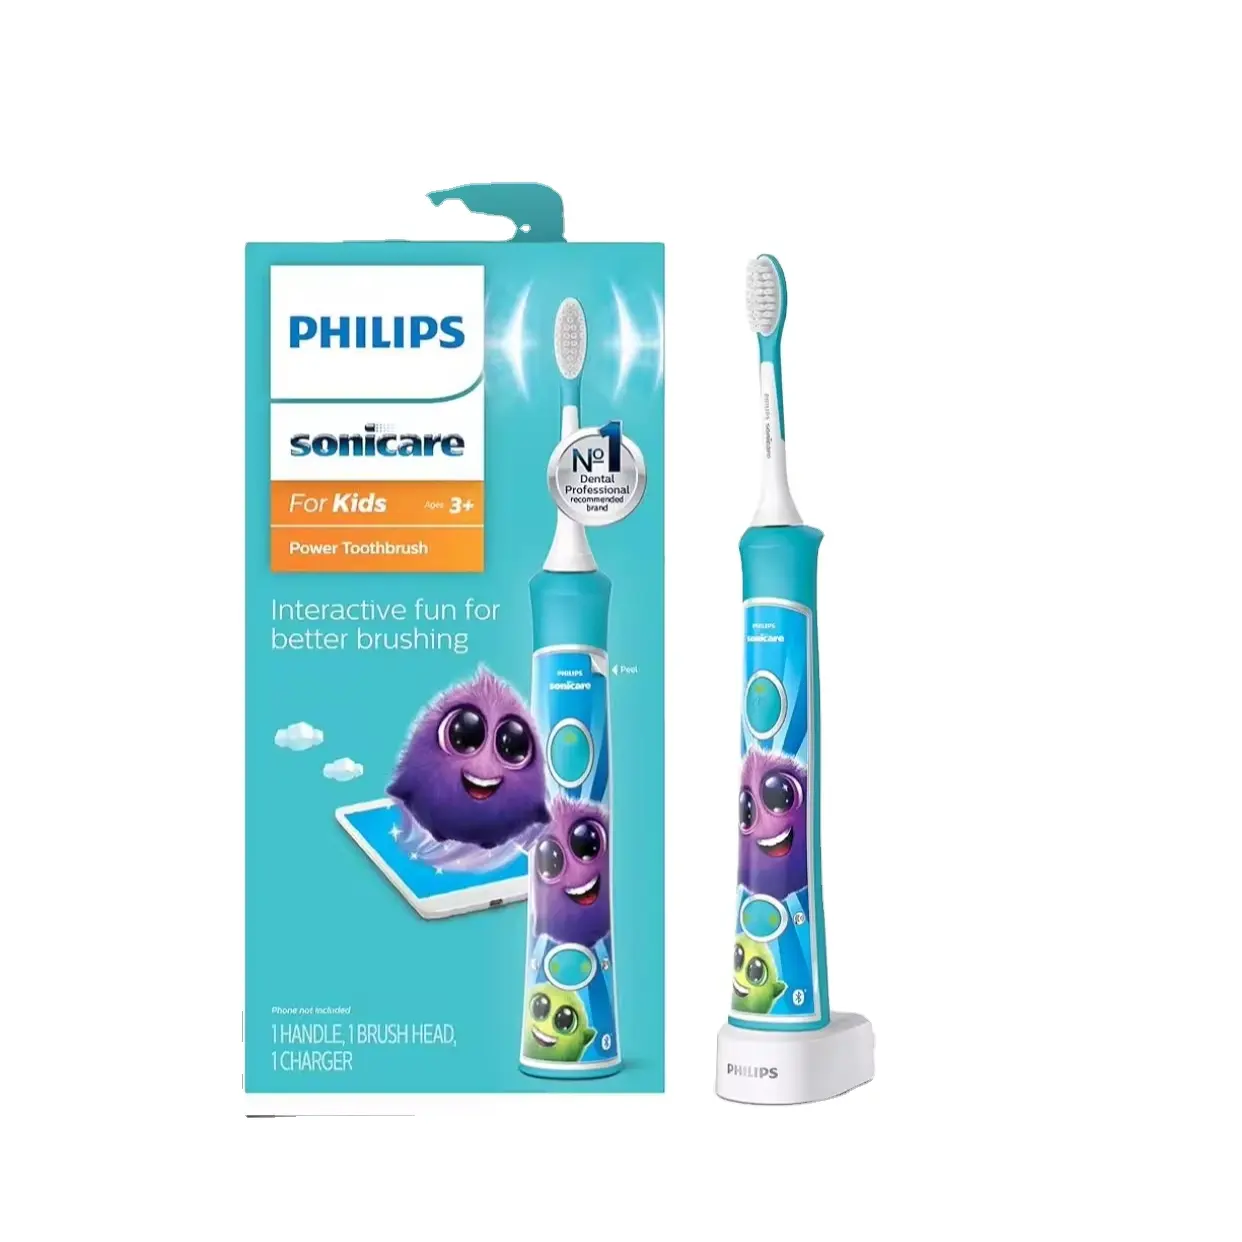 Philips Sonicare pour enfants 3 + Brosse à dents électrique rechargeable connectée Bluetooth, interactive pour un meilleur brossage